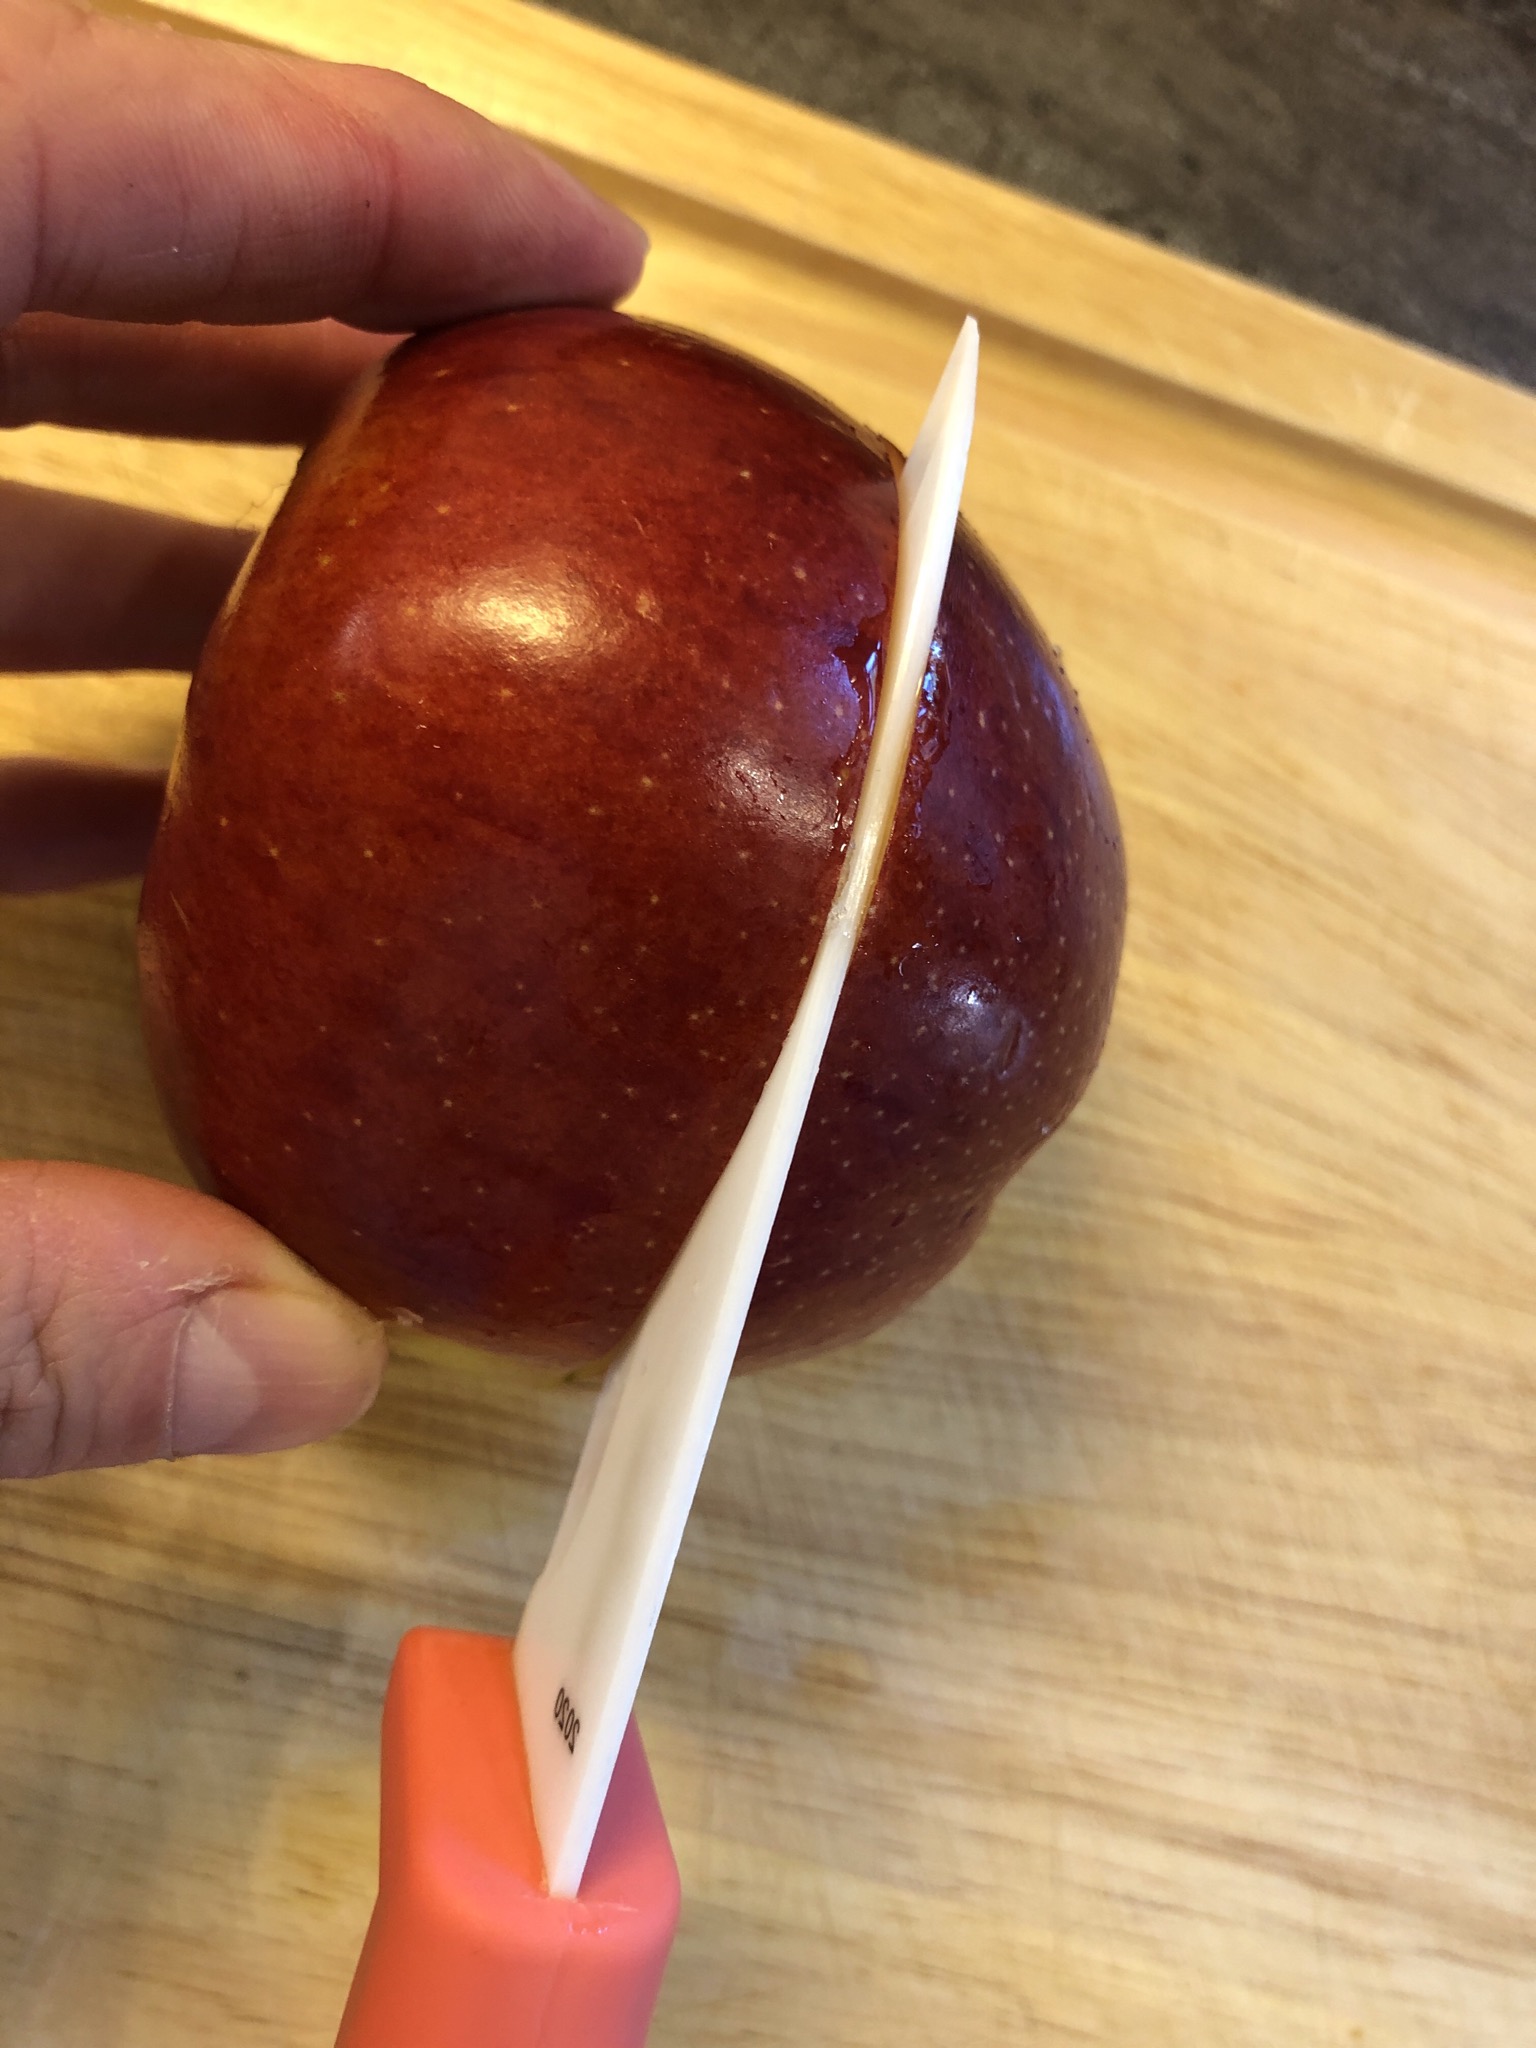 Bild zum Schritt 4 für die Kinder-Beschäftigung: 'Apfel rundherum mittig einschneiden. NICHT durchschneiden!!!!'